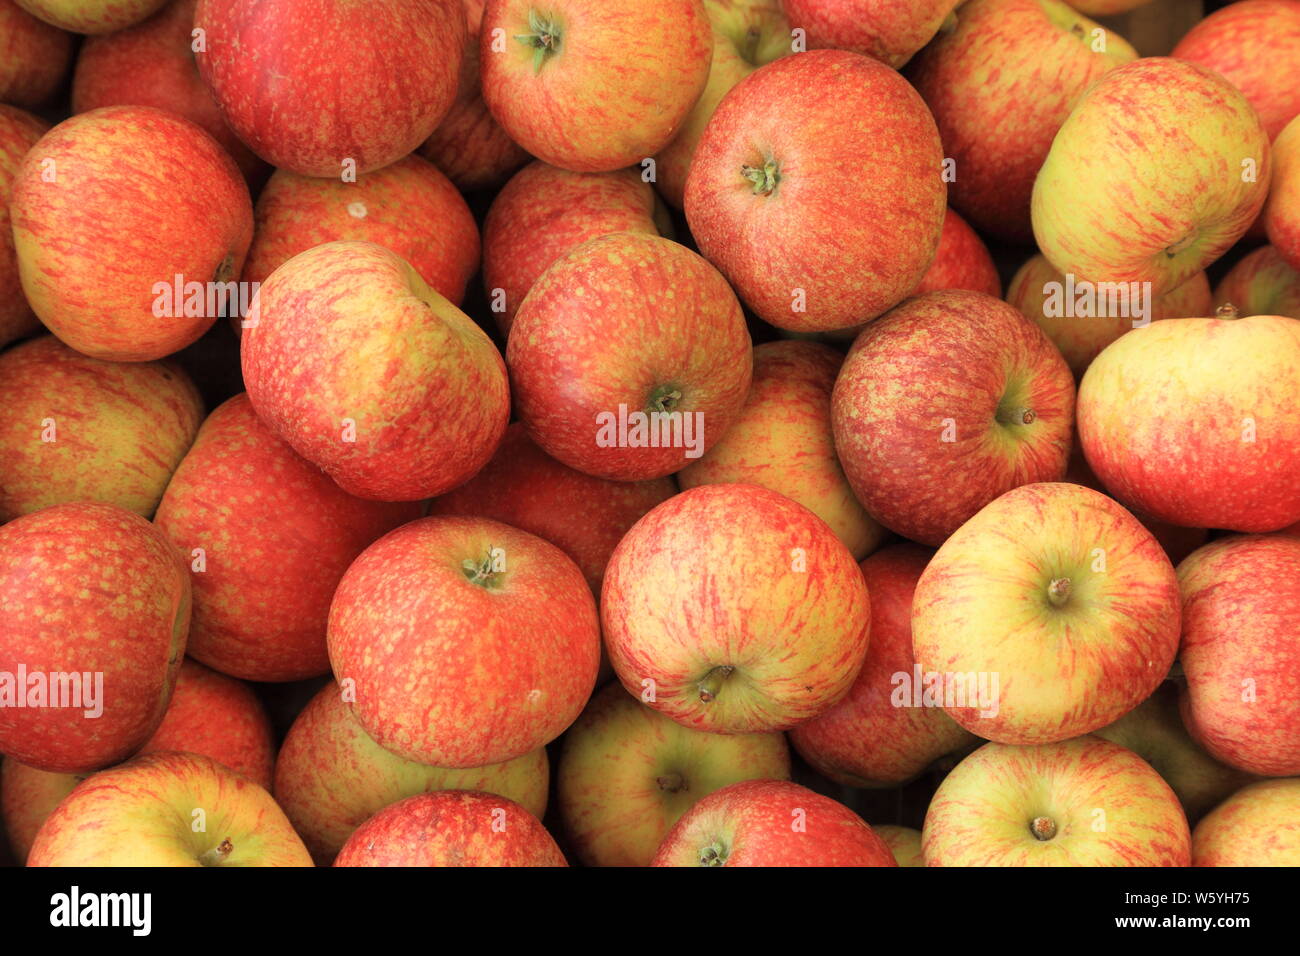 Apple' Schönheit der Badewanne", Äpfel, Sorte, Sorten, Farm Shop Anzeige, Norfolk, England Stockfoto